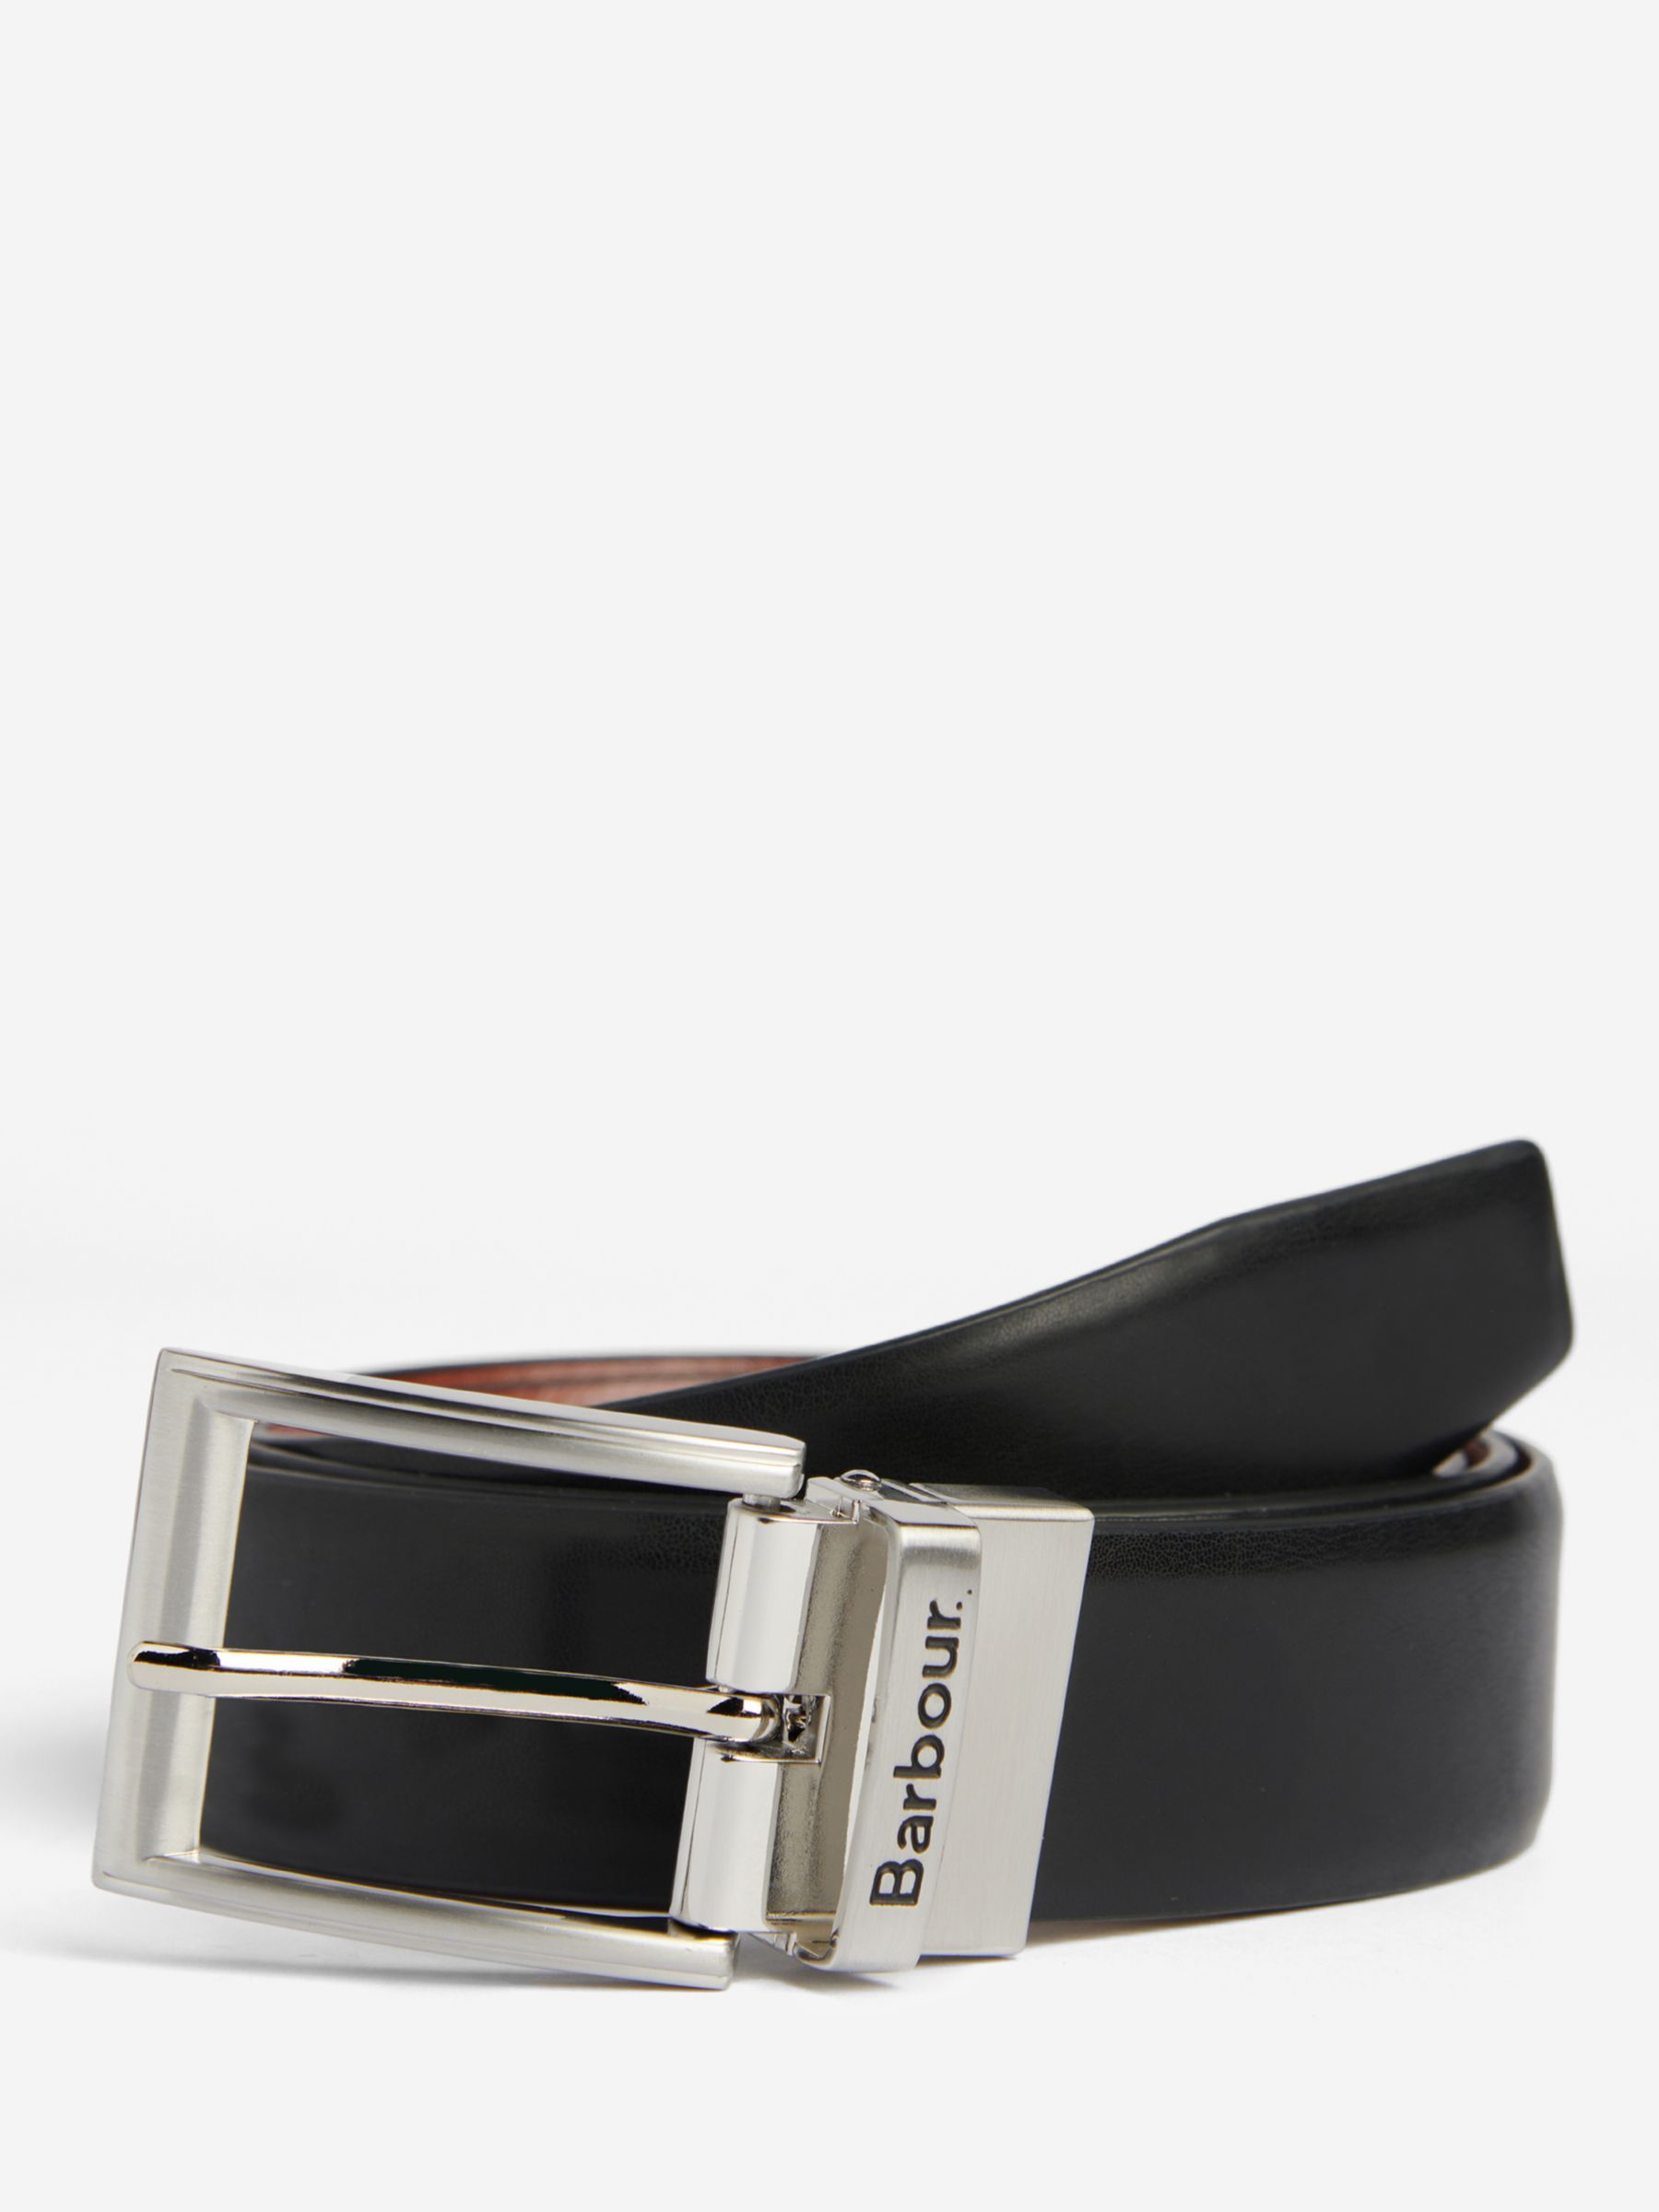 Buy Barbour Fife Reversible Leather Belt, Black/Chestnut Brown Online at johnlewis.com